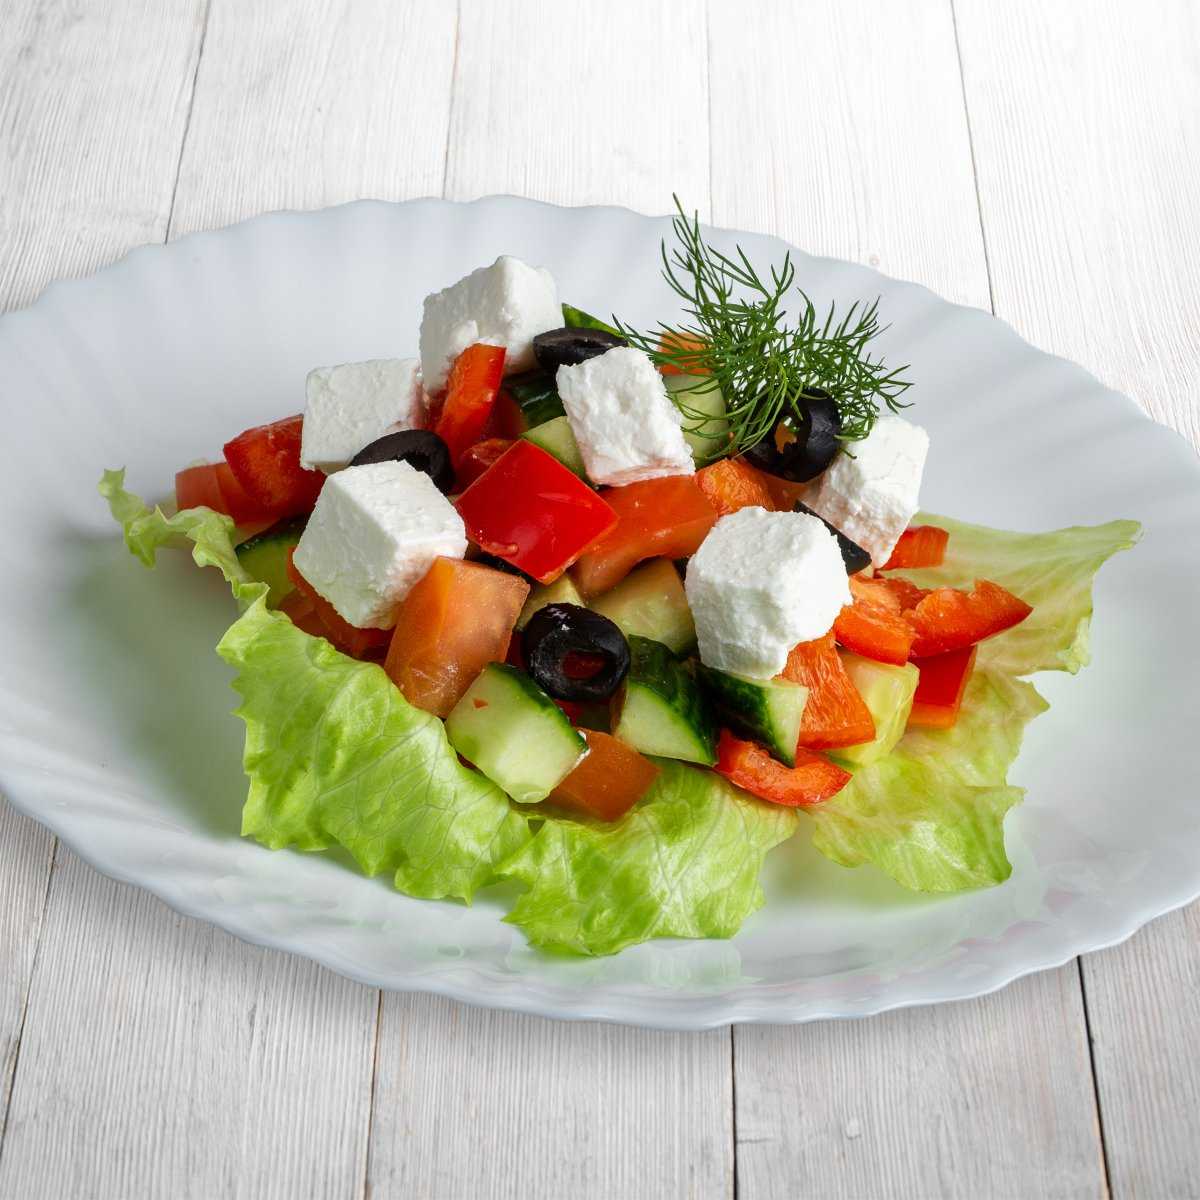 Раскладка салатов. Салат греческий красивая подача. Греческий салат порционно. Греческий салат необычная подача.